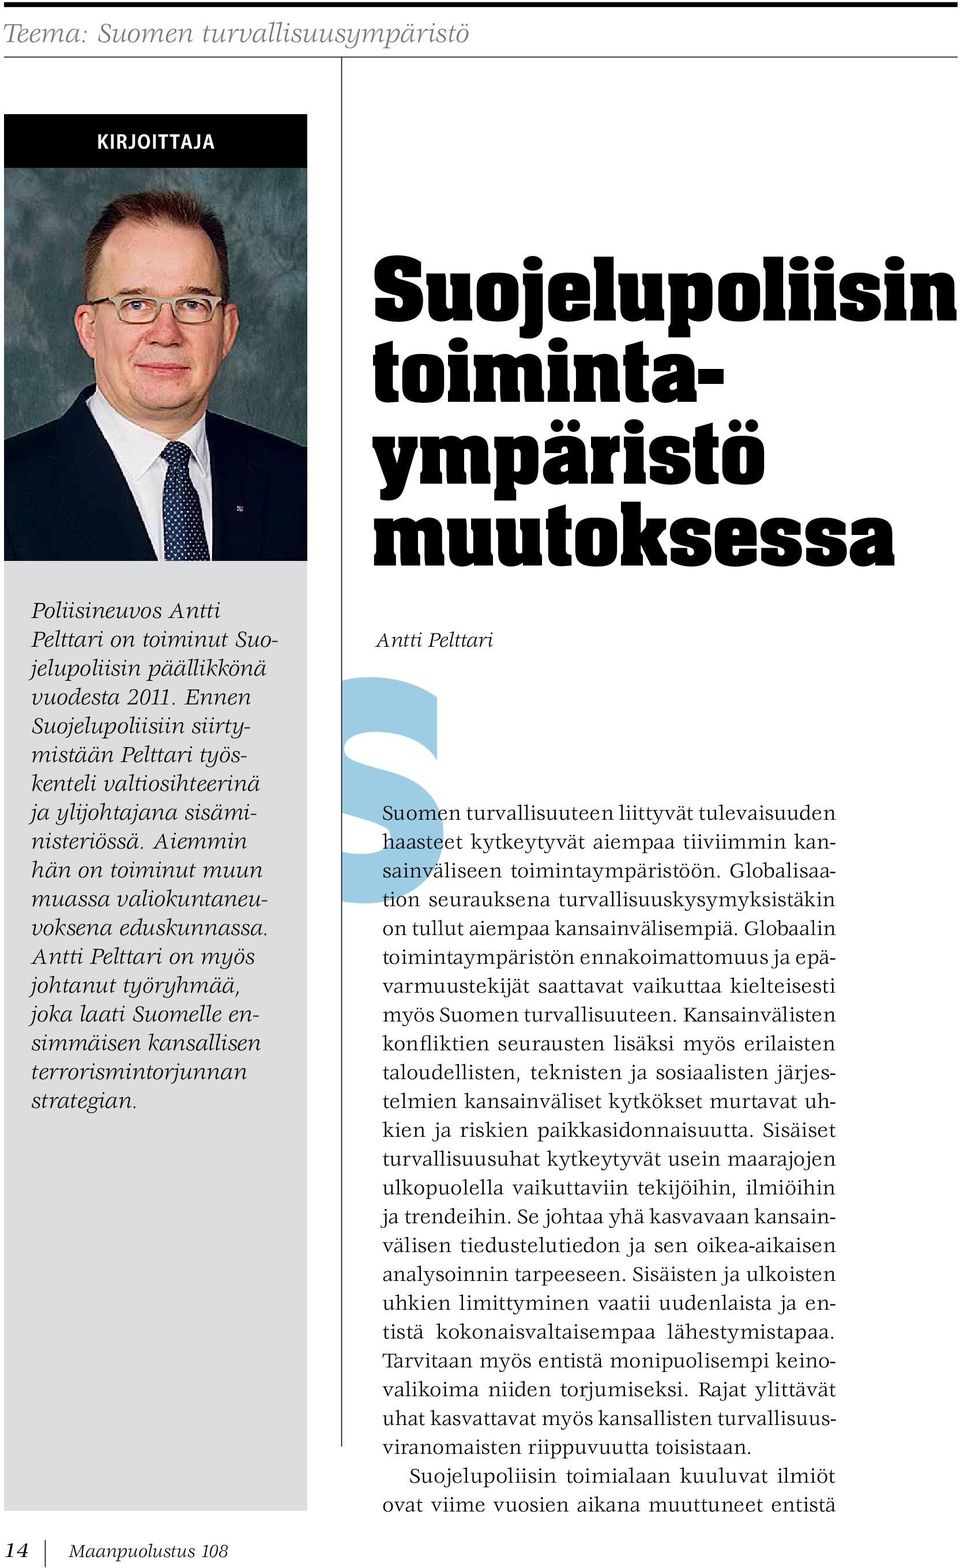 Antti Pelttari on myös johtanut työryhmää, joka laati Suomelle ensimmäisen kansallisen terrorismintorjunnan strategian.